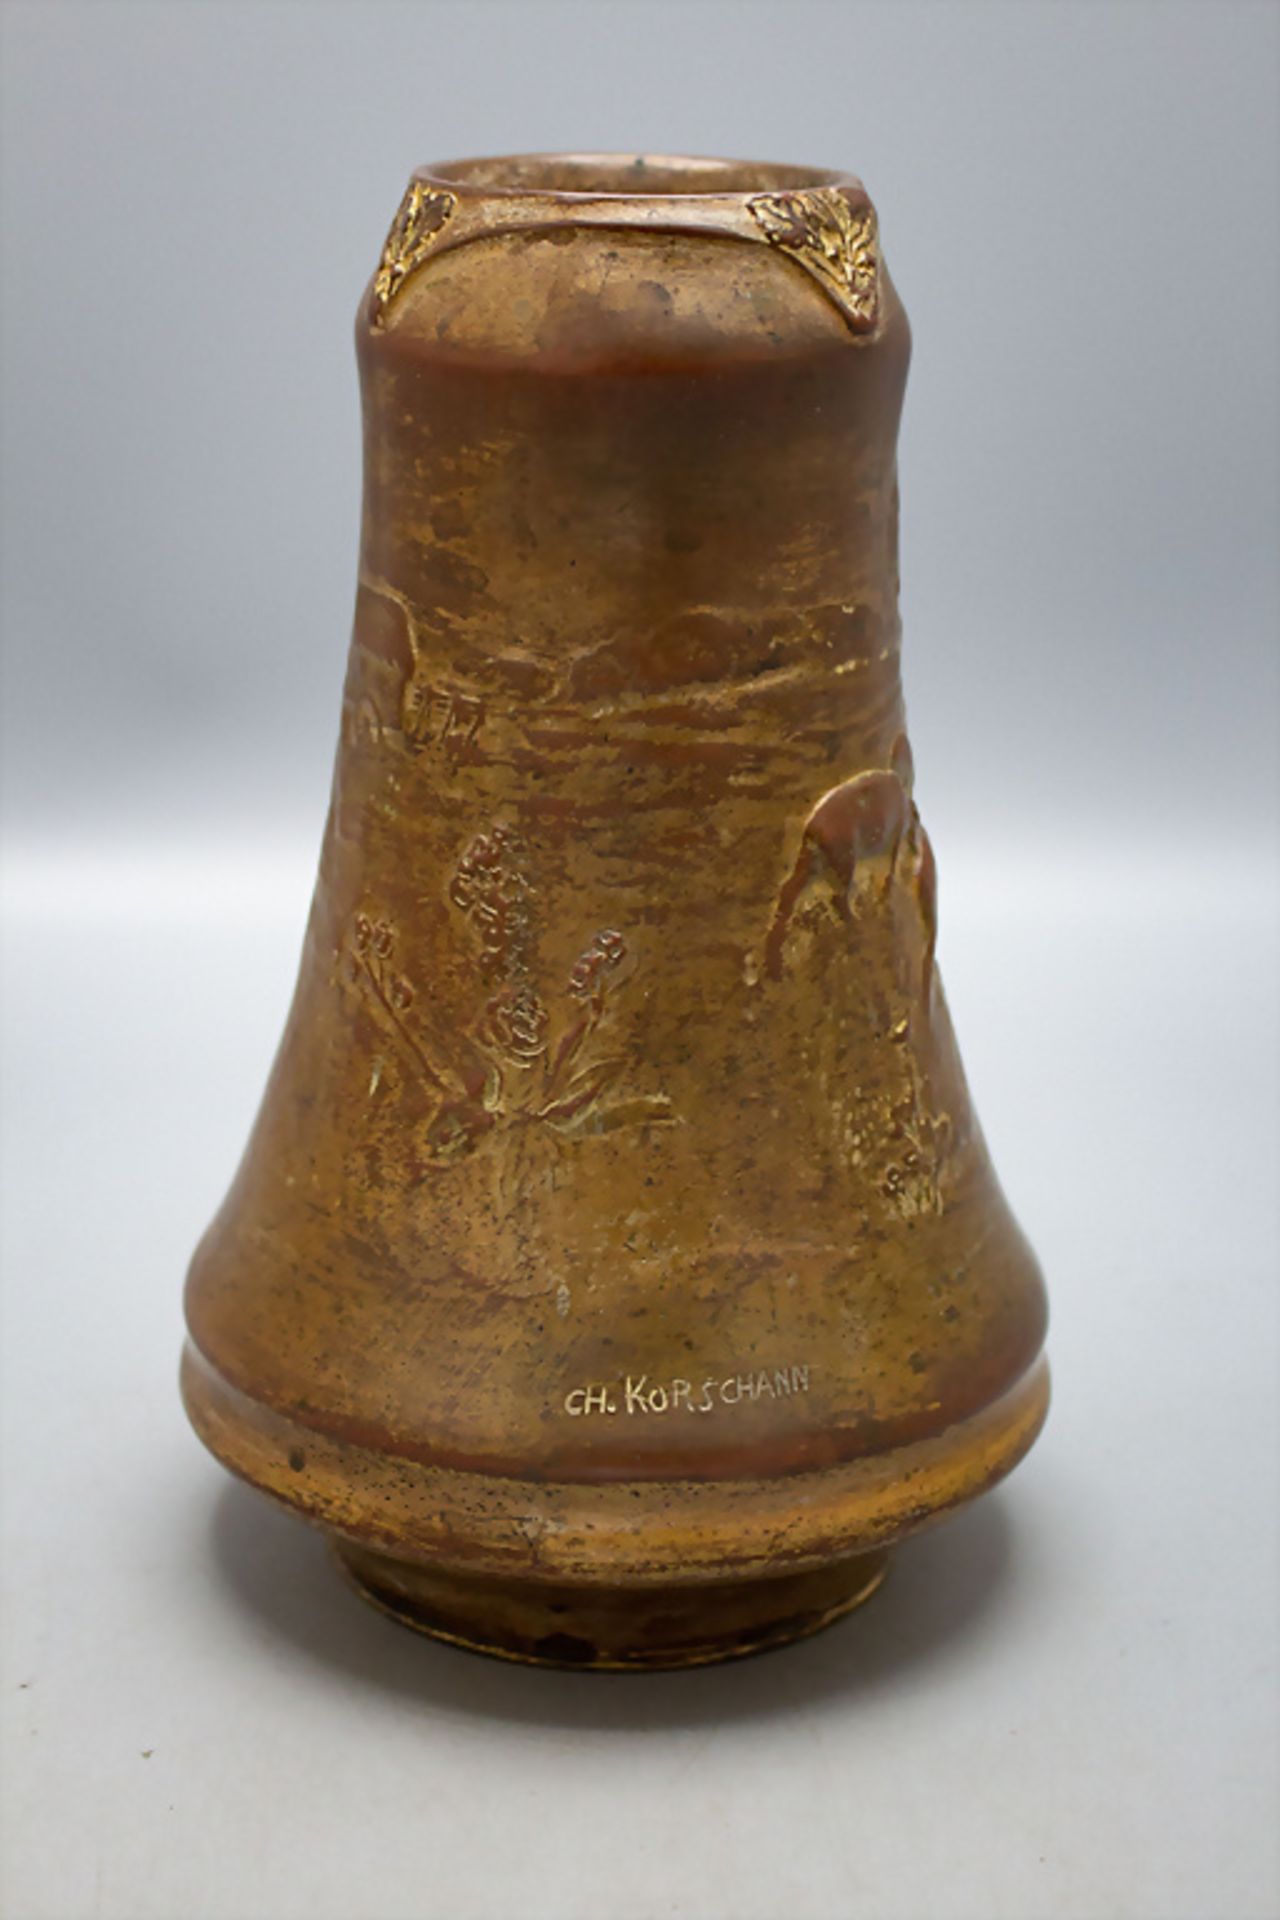 Charles KORSCHANN (1872-1942), Jugendstil Bronze Vase / An Art Nouveau bronze vase, um 1900 - Image 3 of 5